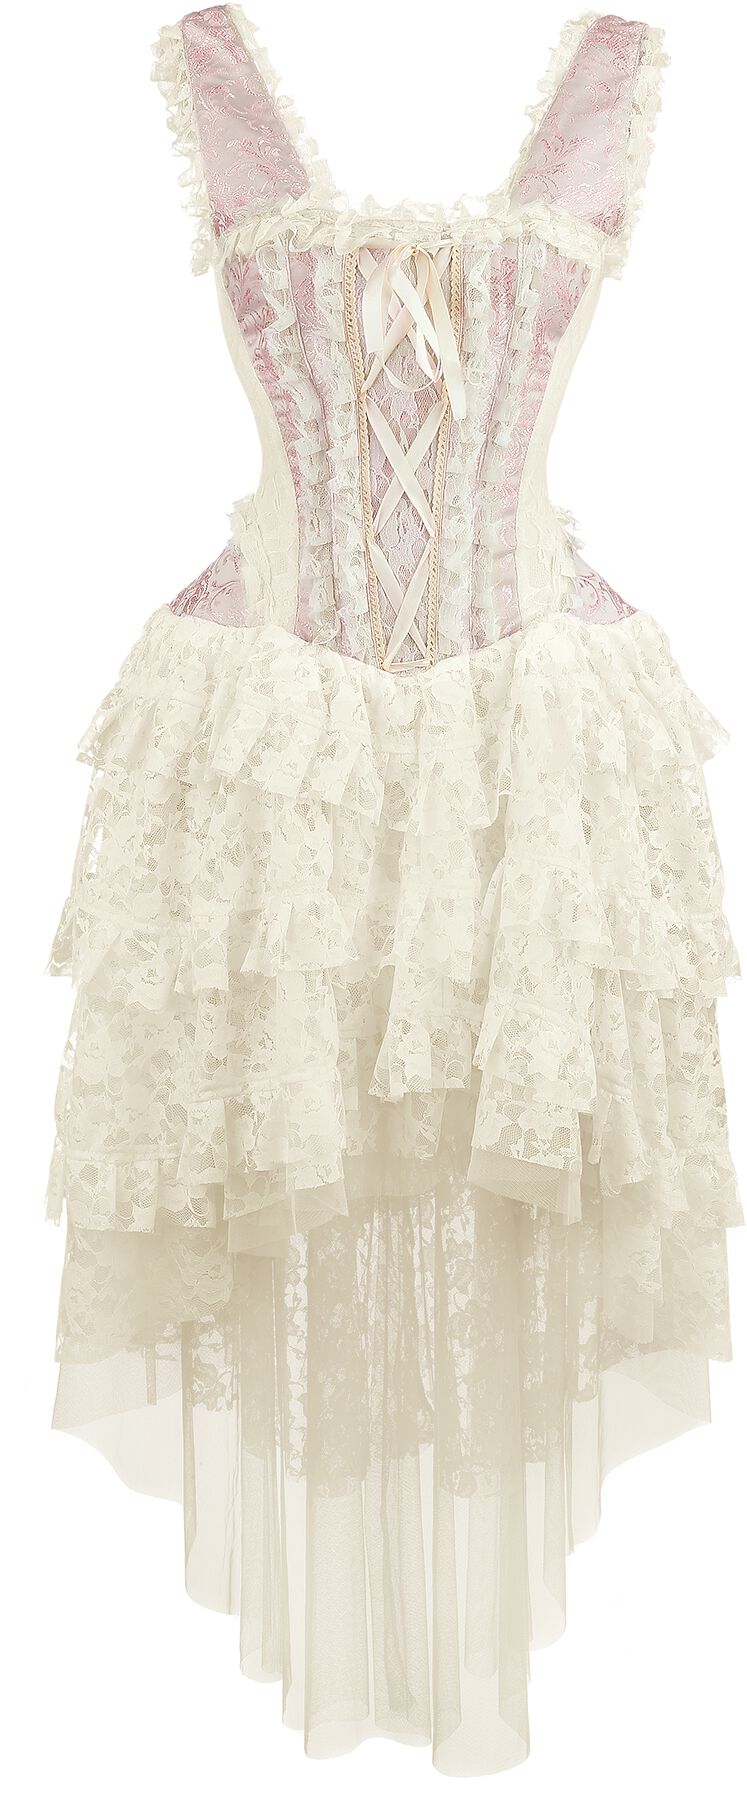 Burleska - Ophelie Dress - Kleid lang - rosa